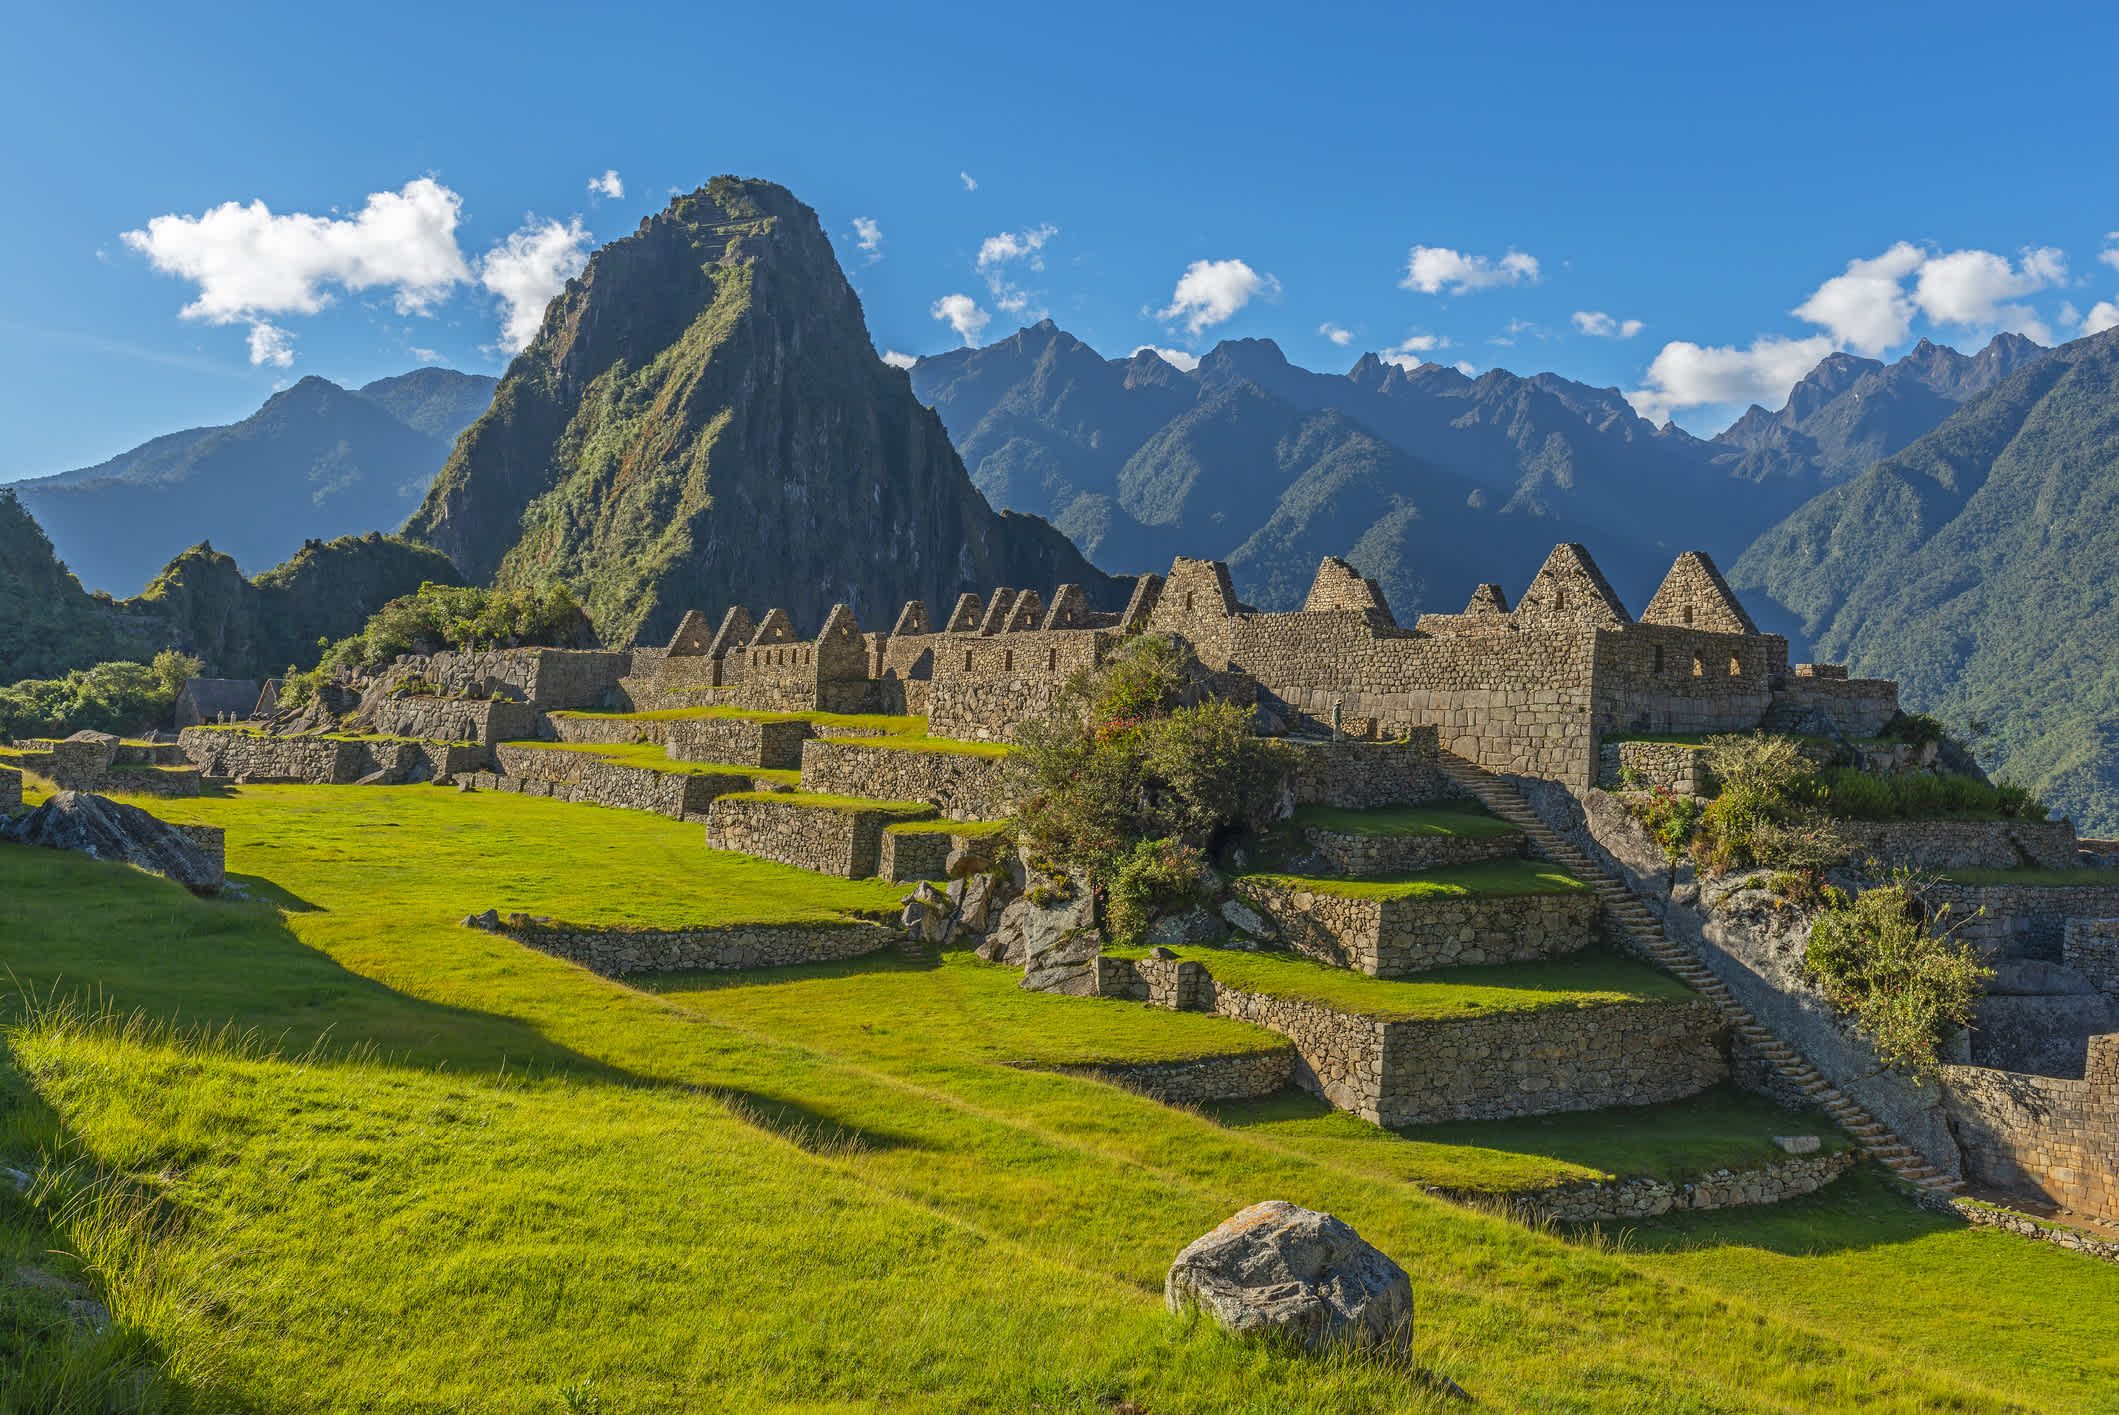 La place principale des ruines incas du Machu Picchu avec le sommet du Huayna Picchu en arrière-plan, près de Cuzco au Pérou